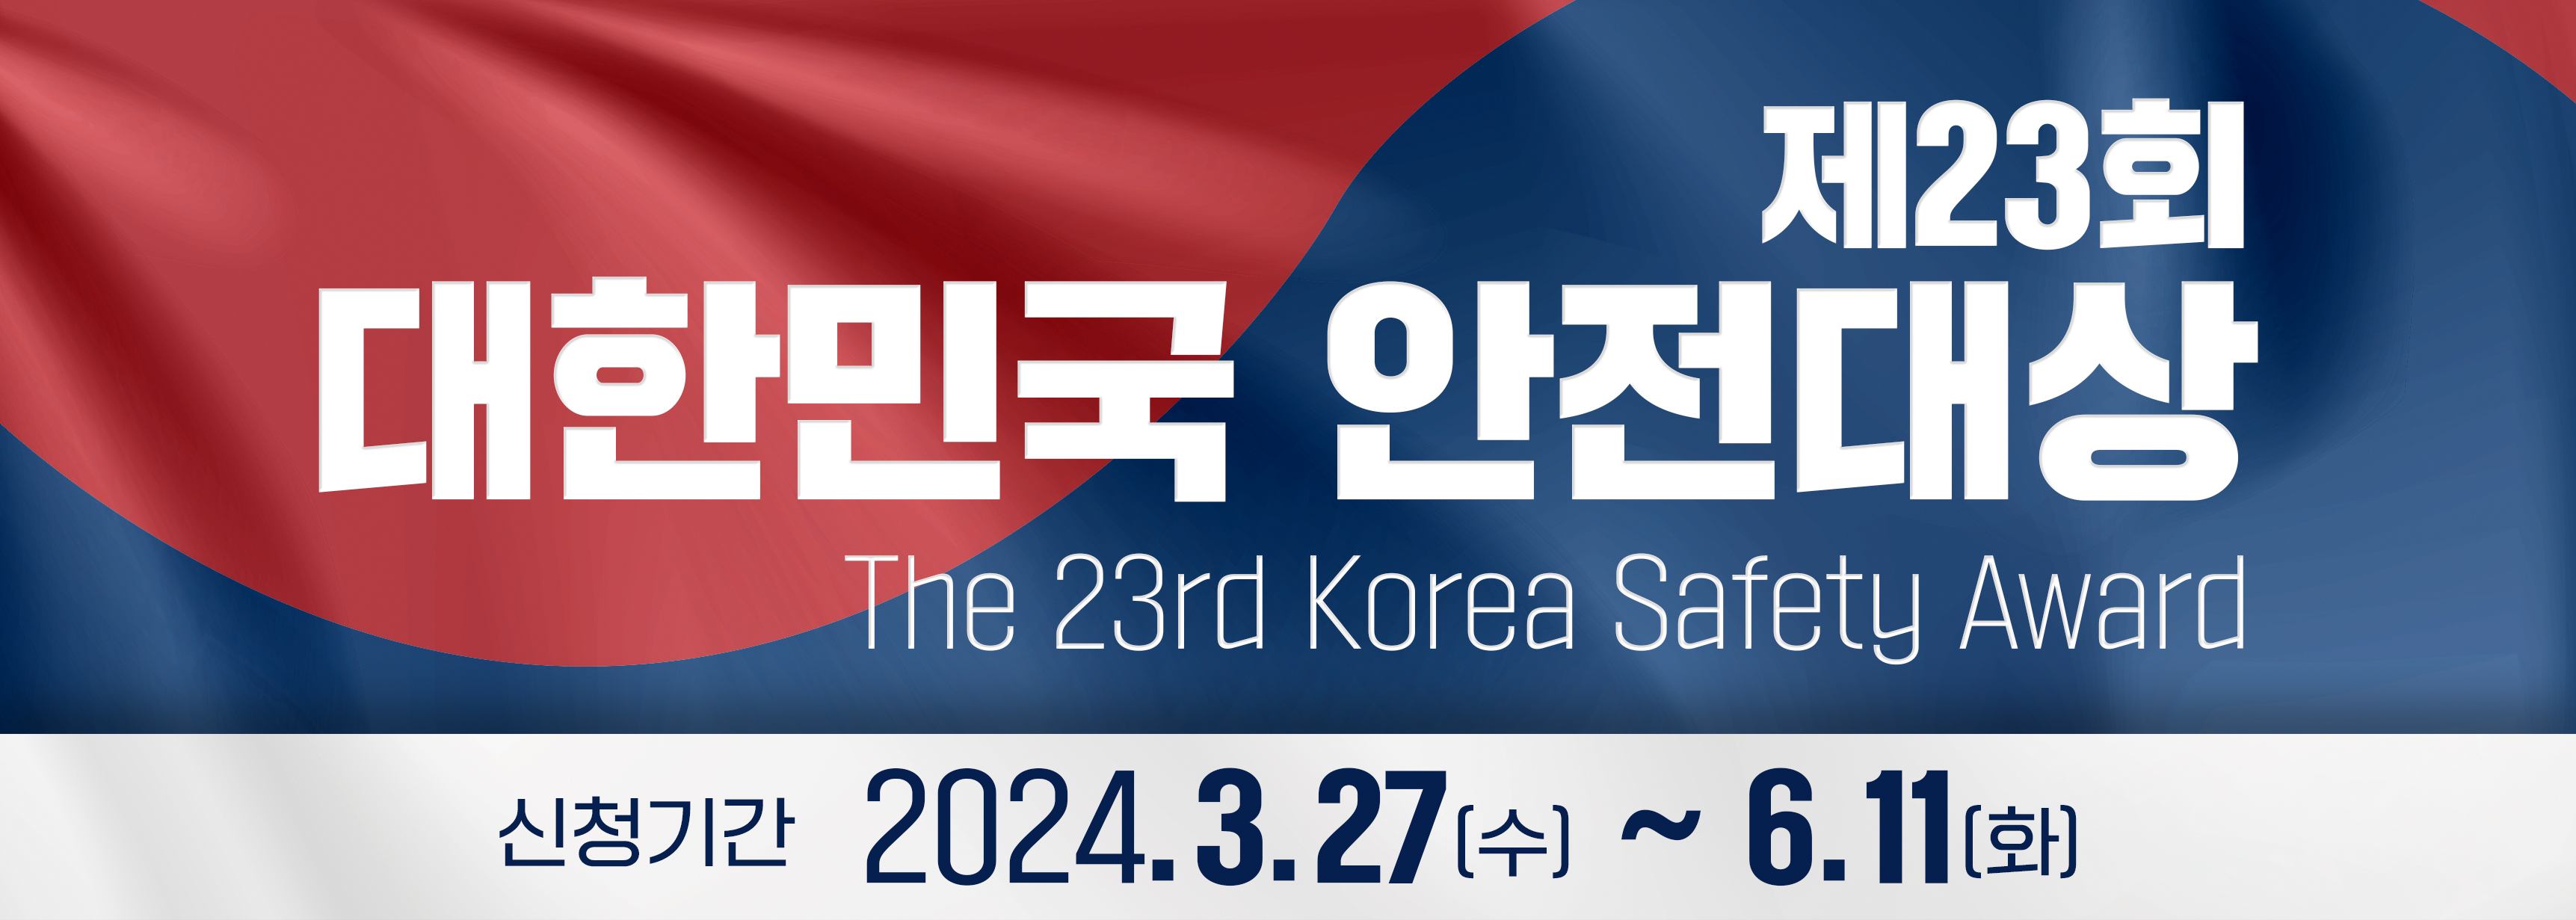 제 23회 대한민국 안전대상